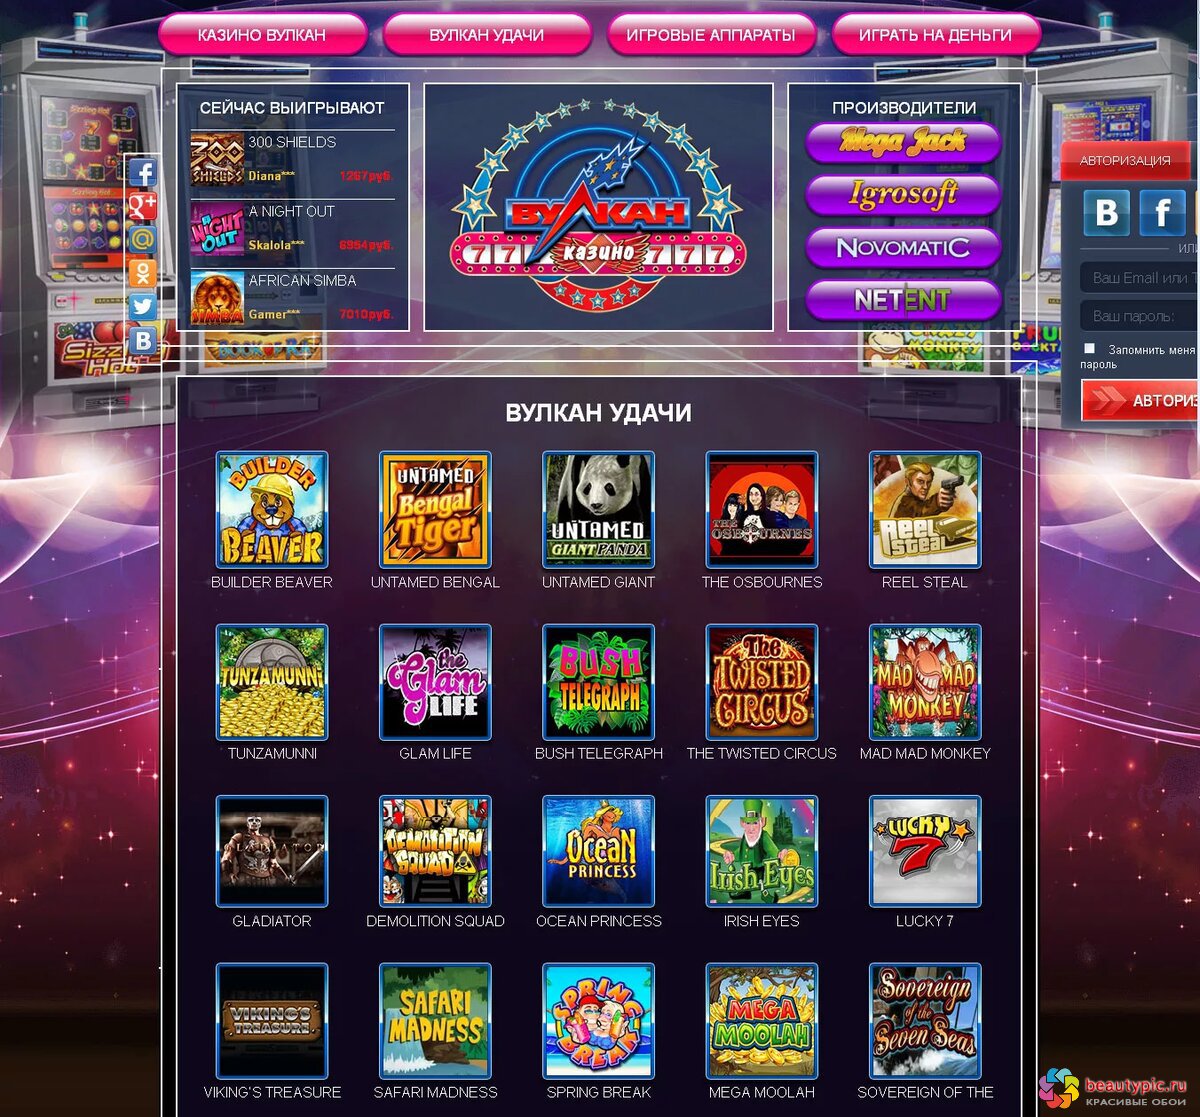 Вулкан игровые автоматы официальный сайт скачать игровые автоматы под видом лотереи